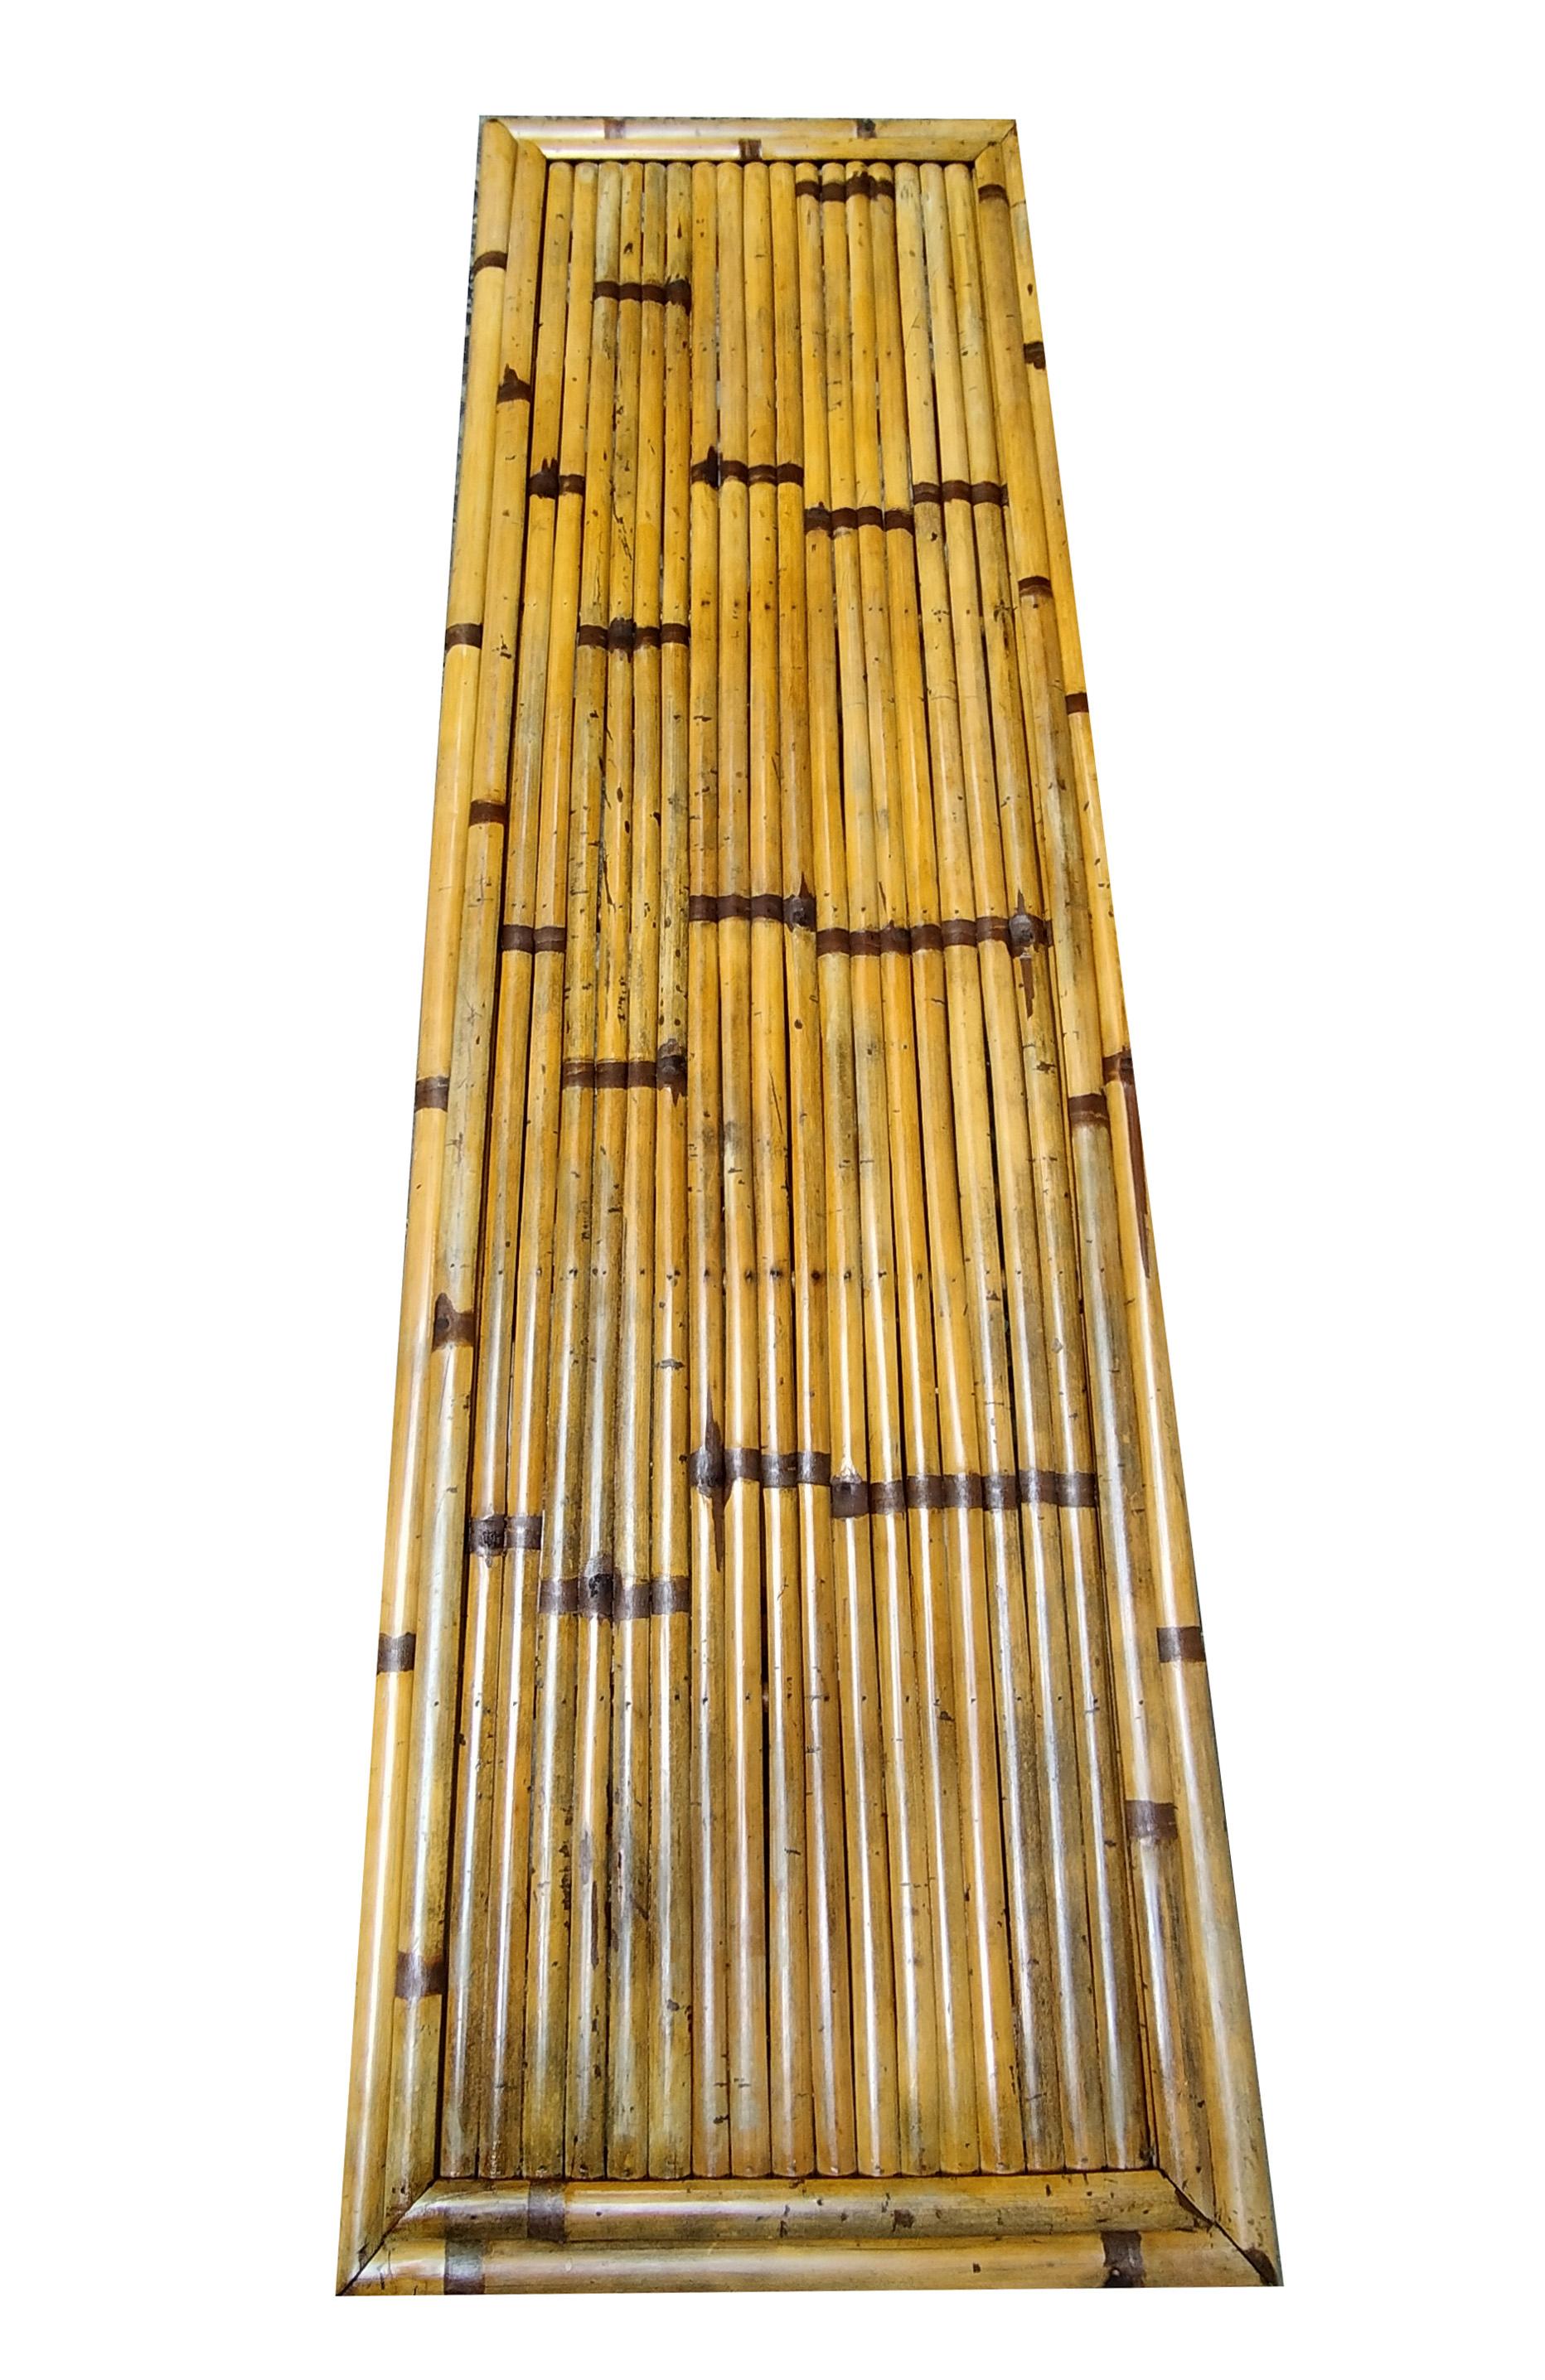 Rechteckige Konsole aus Bambus und Rattan, Italien, 1970er Jahre (Ende des 20. Jahrhunderts)